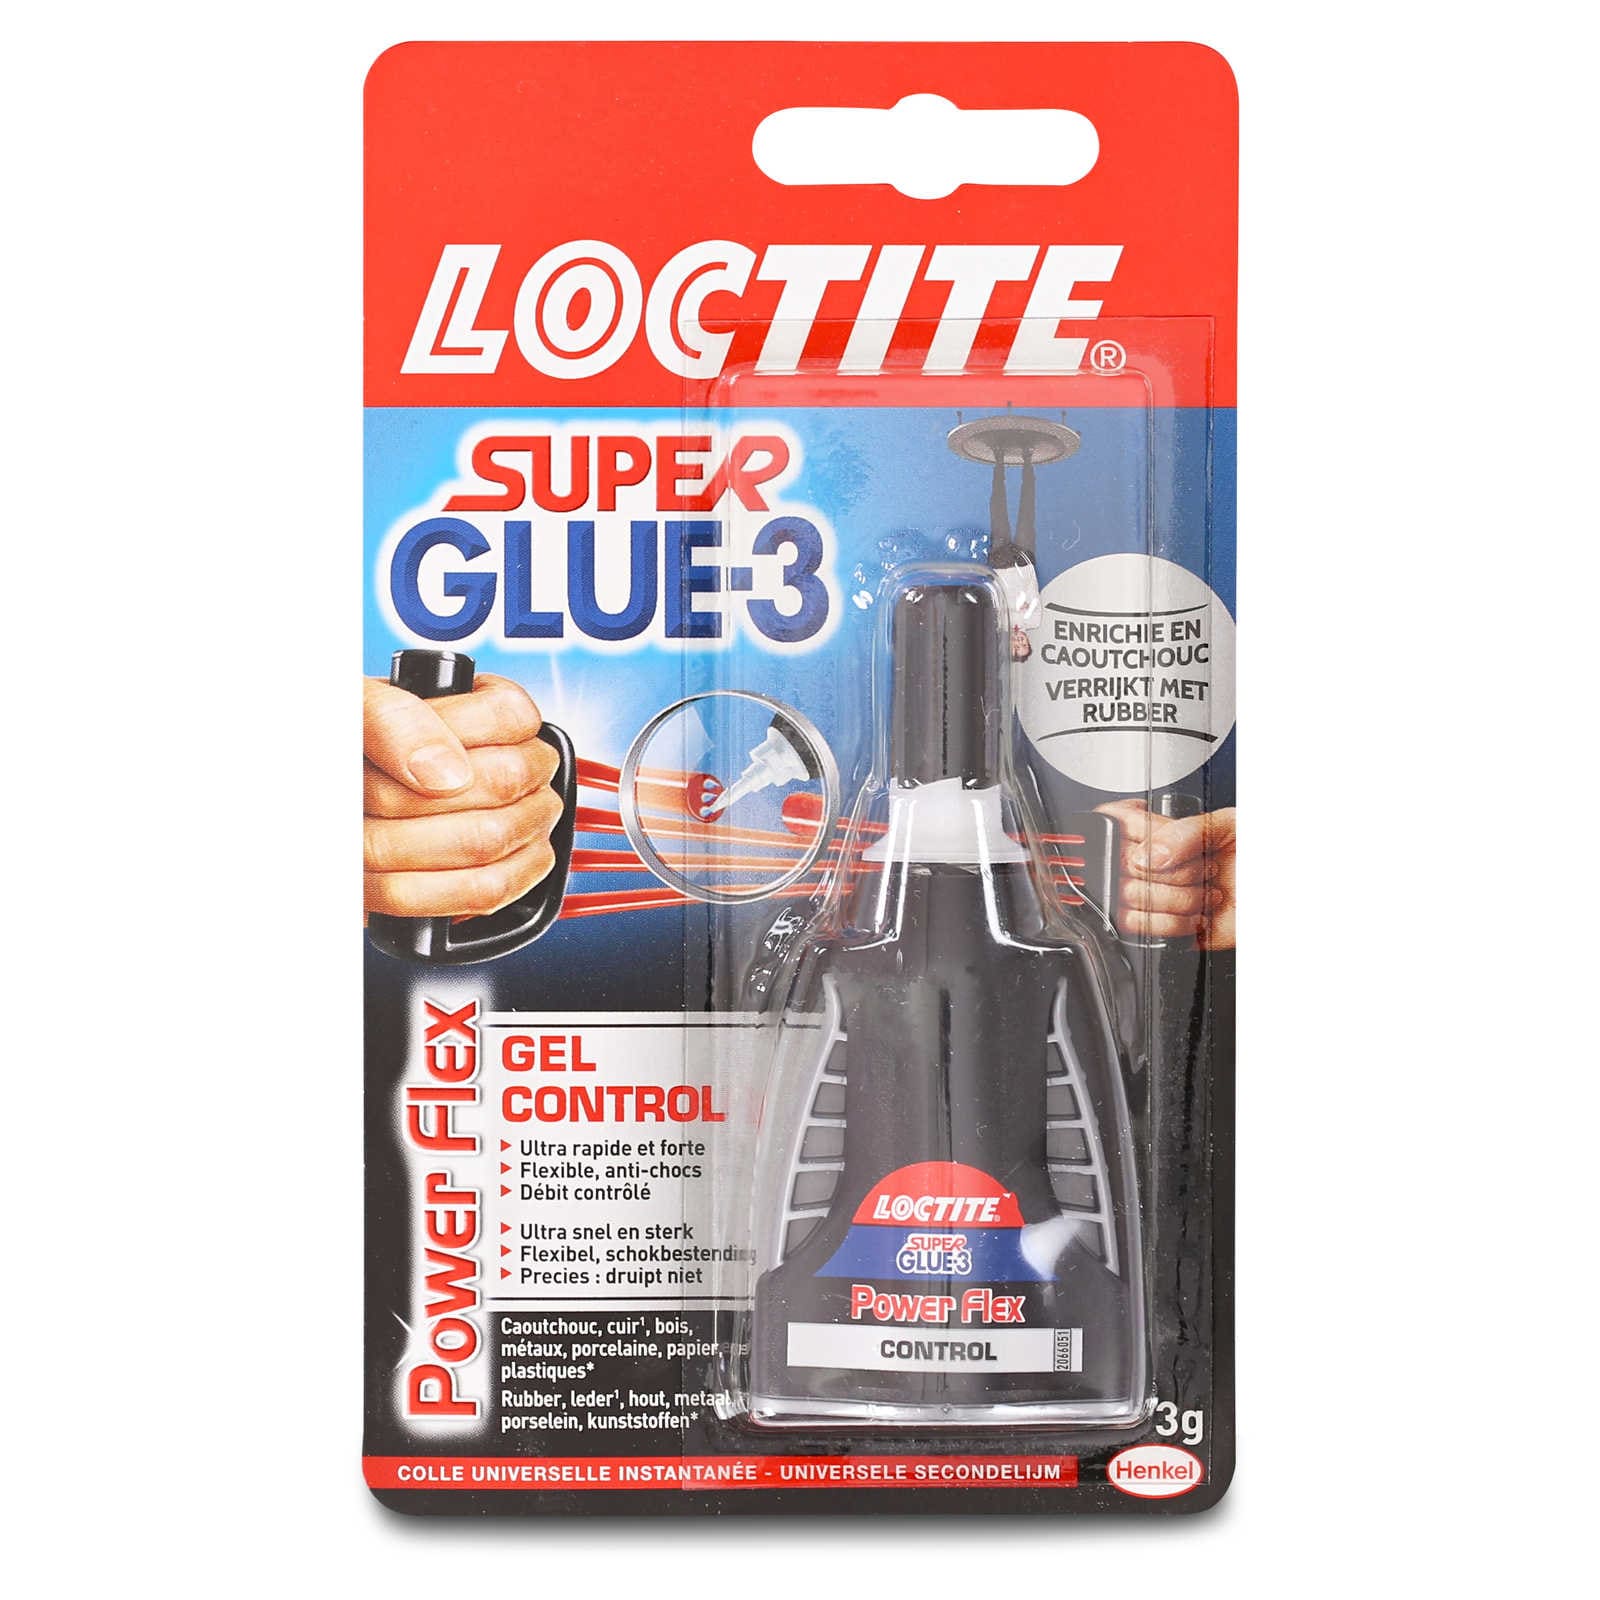 Loctite Super Glue-3 Power Gel, colle forte enrichie en caoutchouc